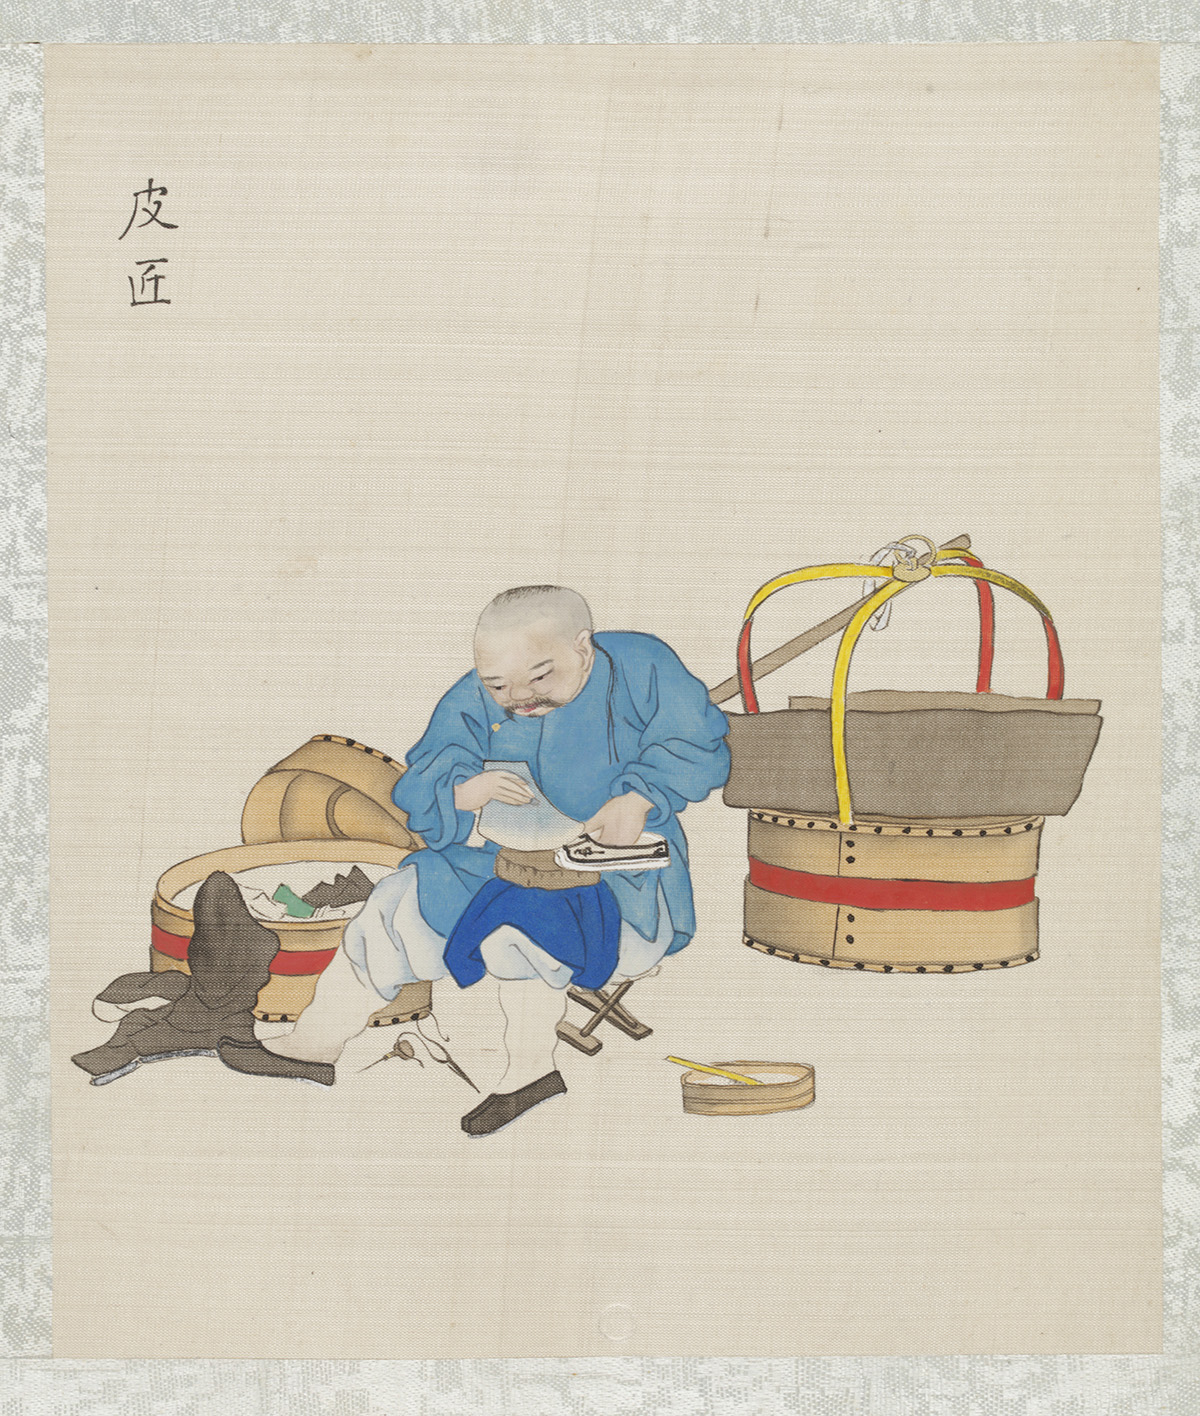 补鞋匠,在纸上水彩(7790:18)©维多利亚和阿尔伯特博物馆